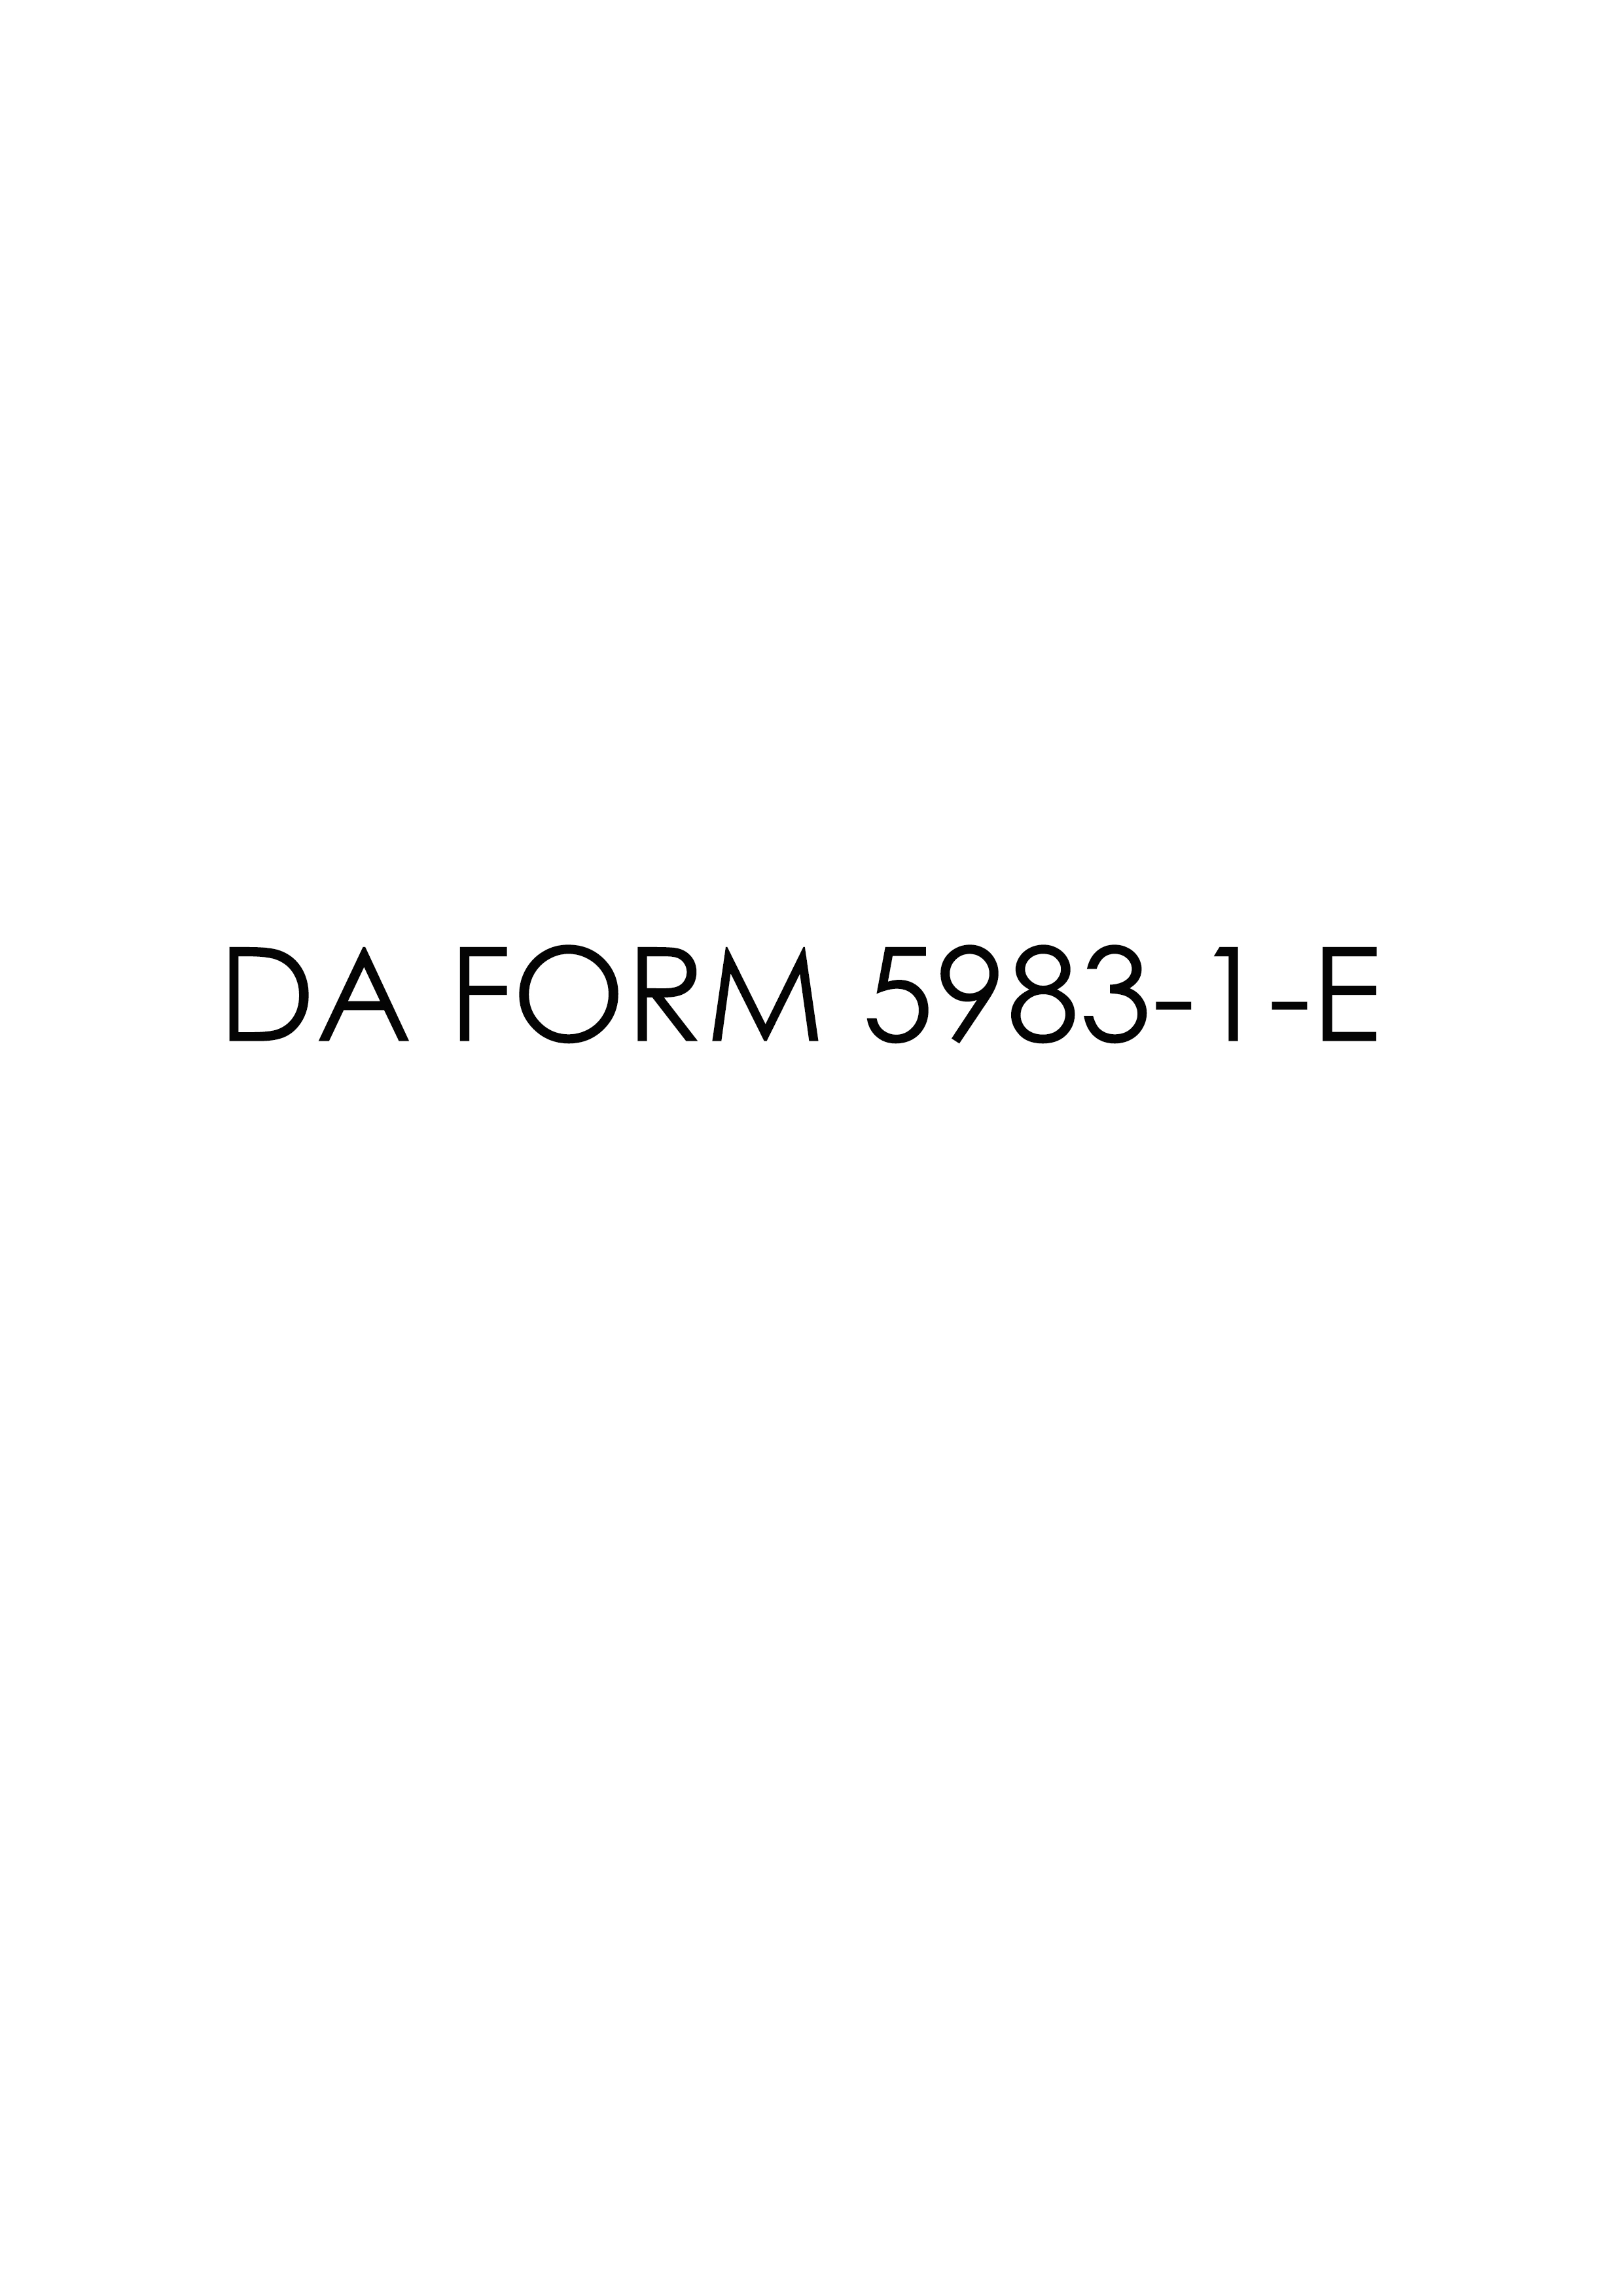 Download Fillable da Form 5983-1-E